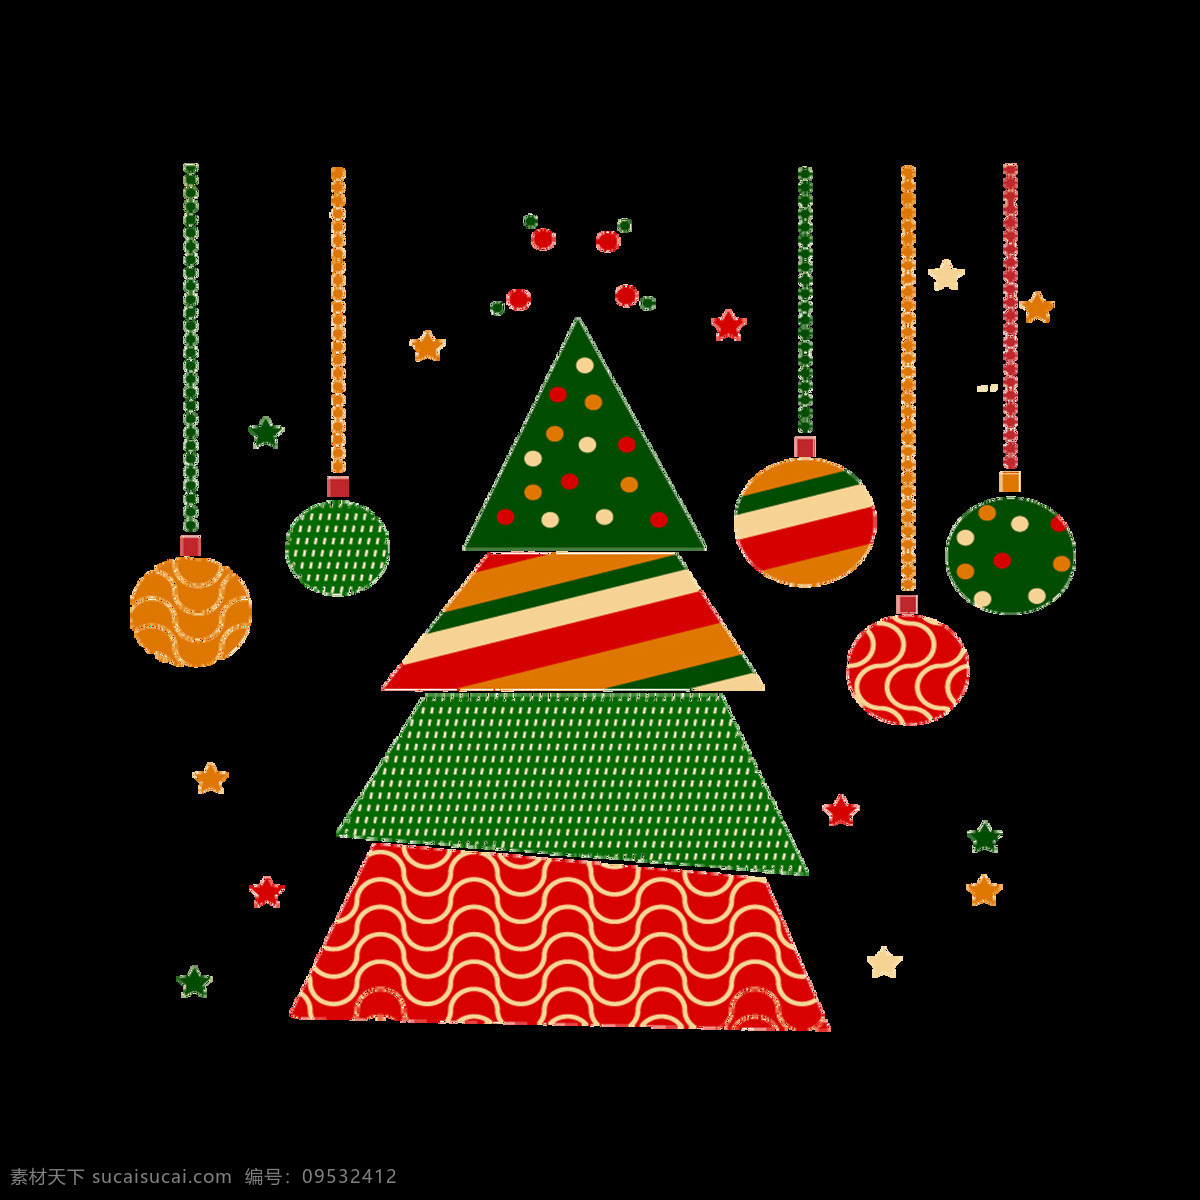 彩色 扁平化 圣诞 吊球 圣诞树 元素 装饰图案 圣诞快乐 设计素材 扁平化元素 圣诞素材 节日元素 2017圣诞 圣诞彩球 圣诞花环 圣诞png 圣诞免抠元素